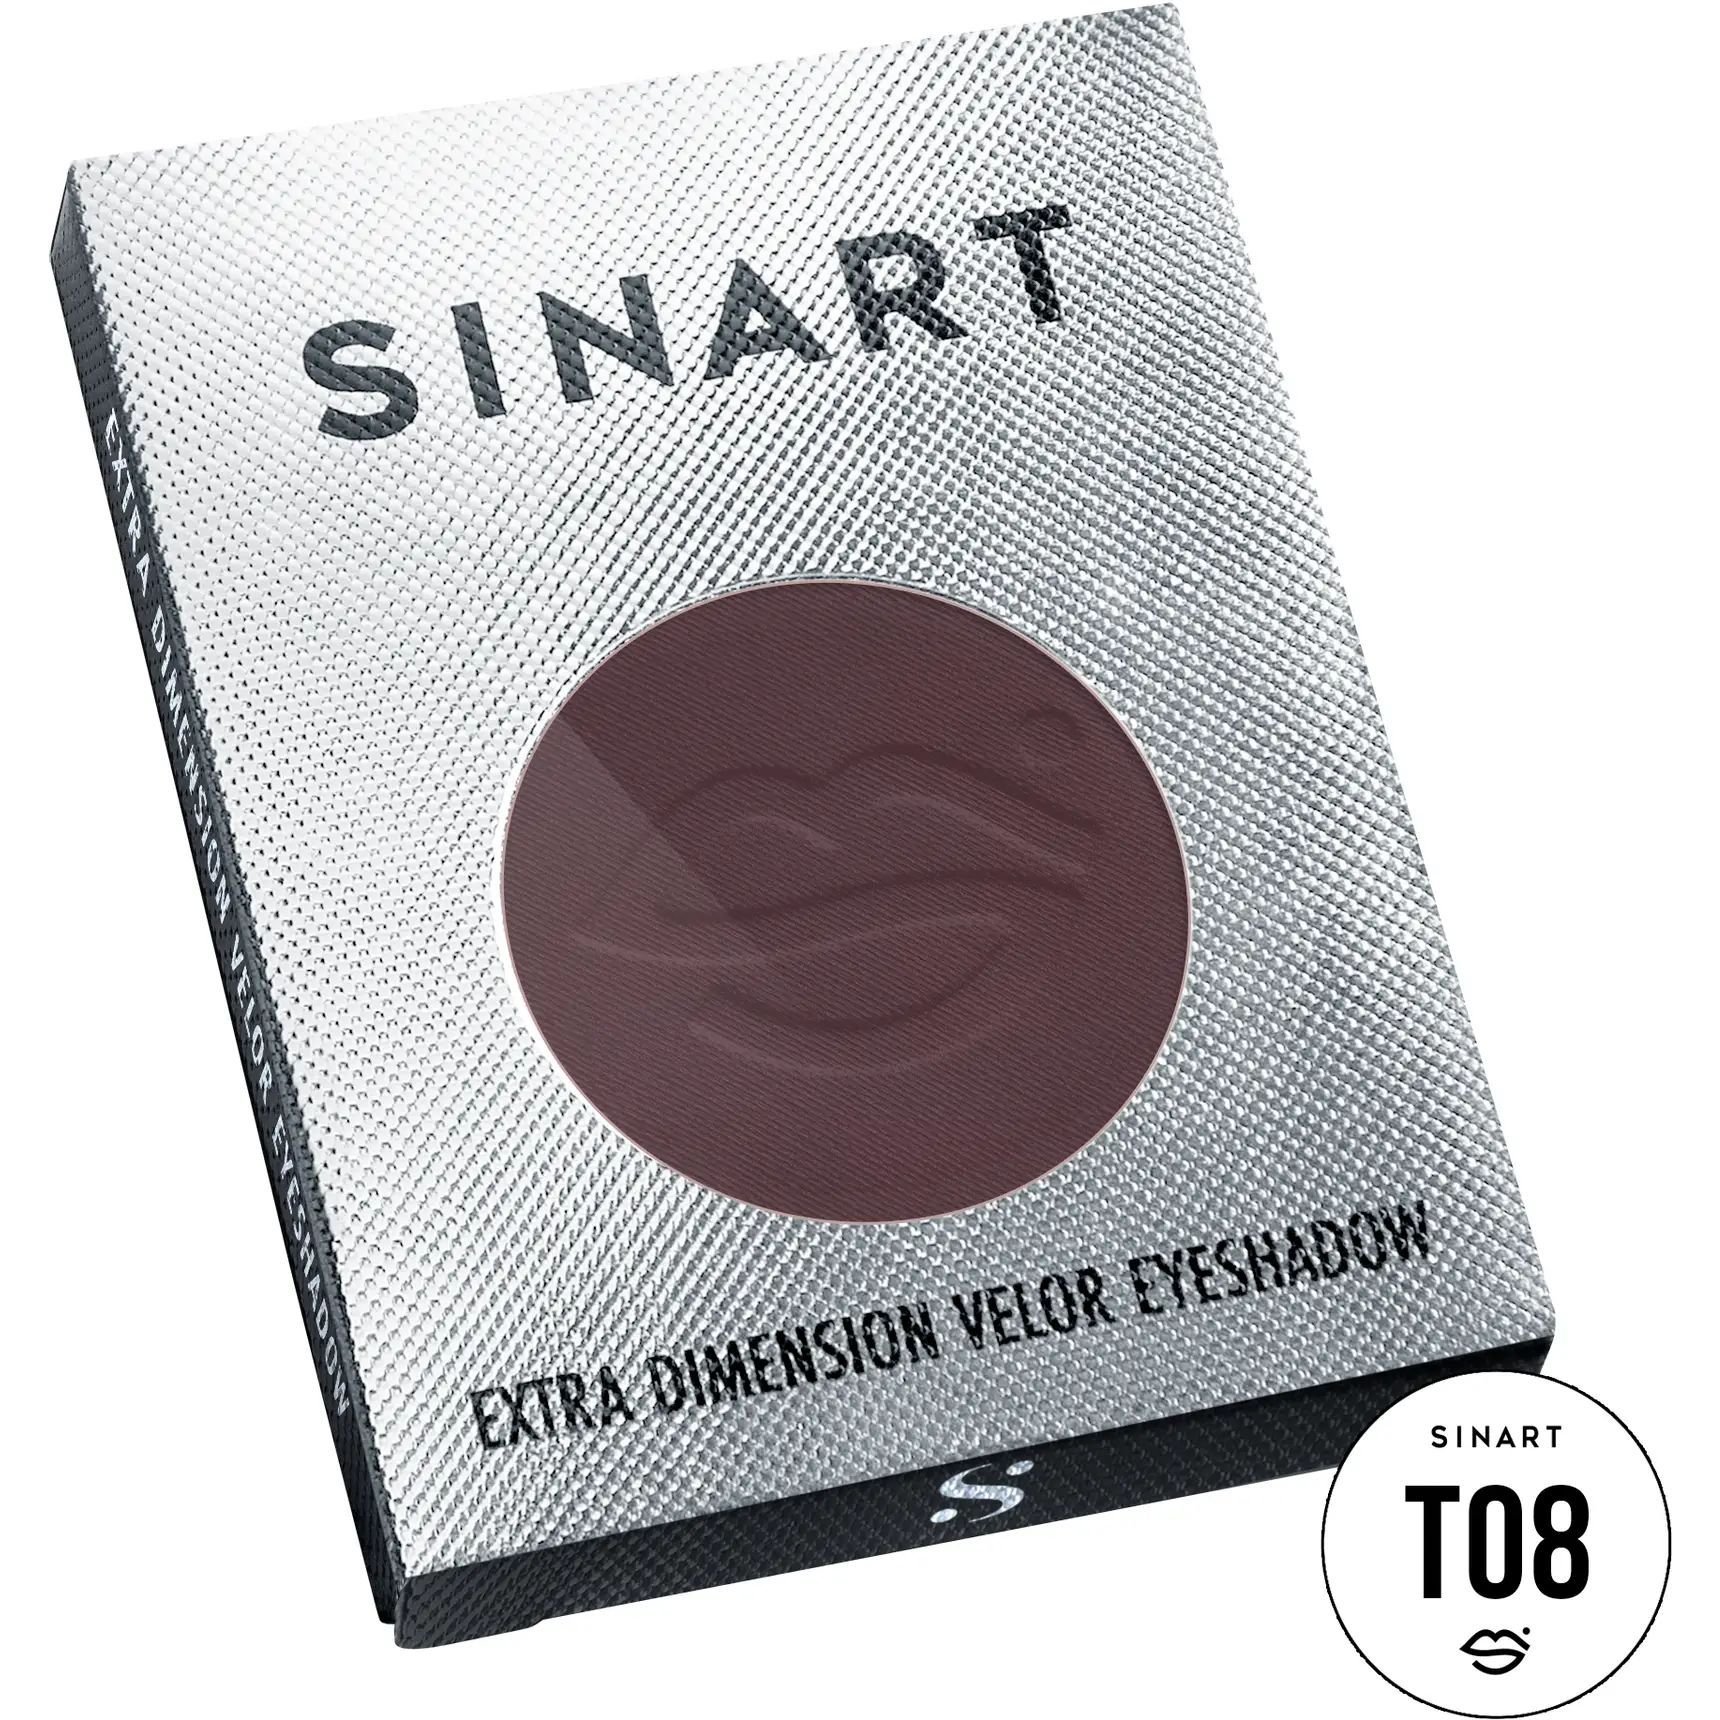 Прессованные тени для век Sinart T08 Extra Dimension Velor Eyeshadow - фото 3